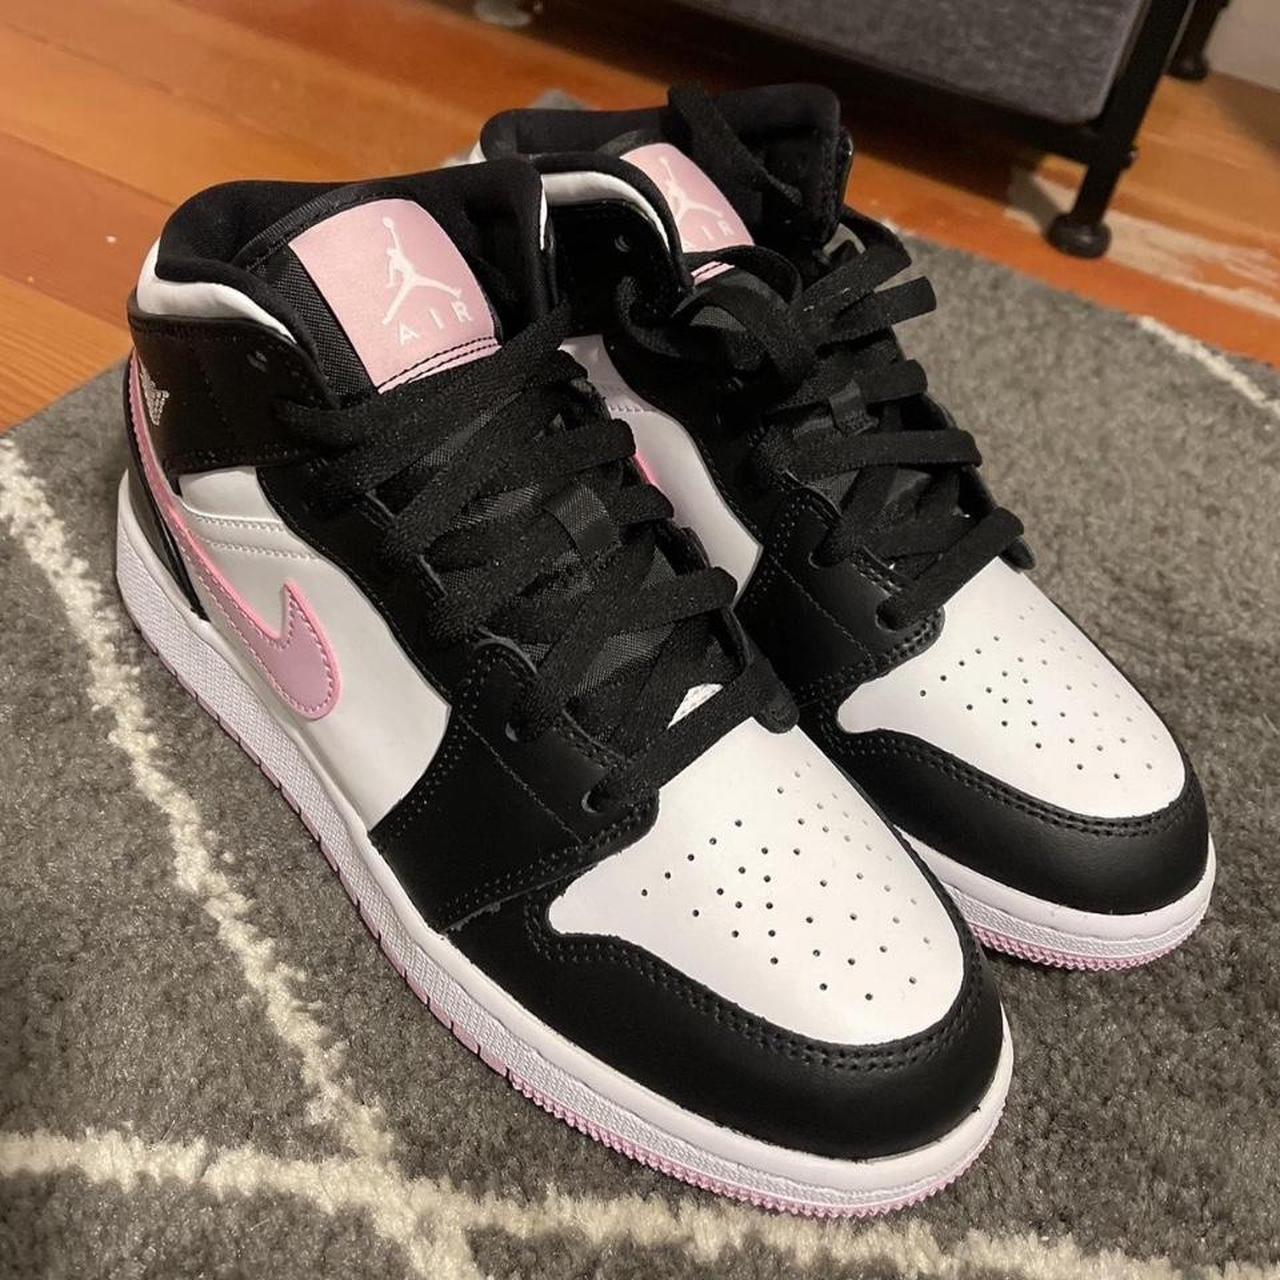 Pretty pink and black Nike Air Jordan 1’s. Size 6Y,... - Depop